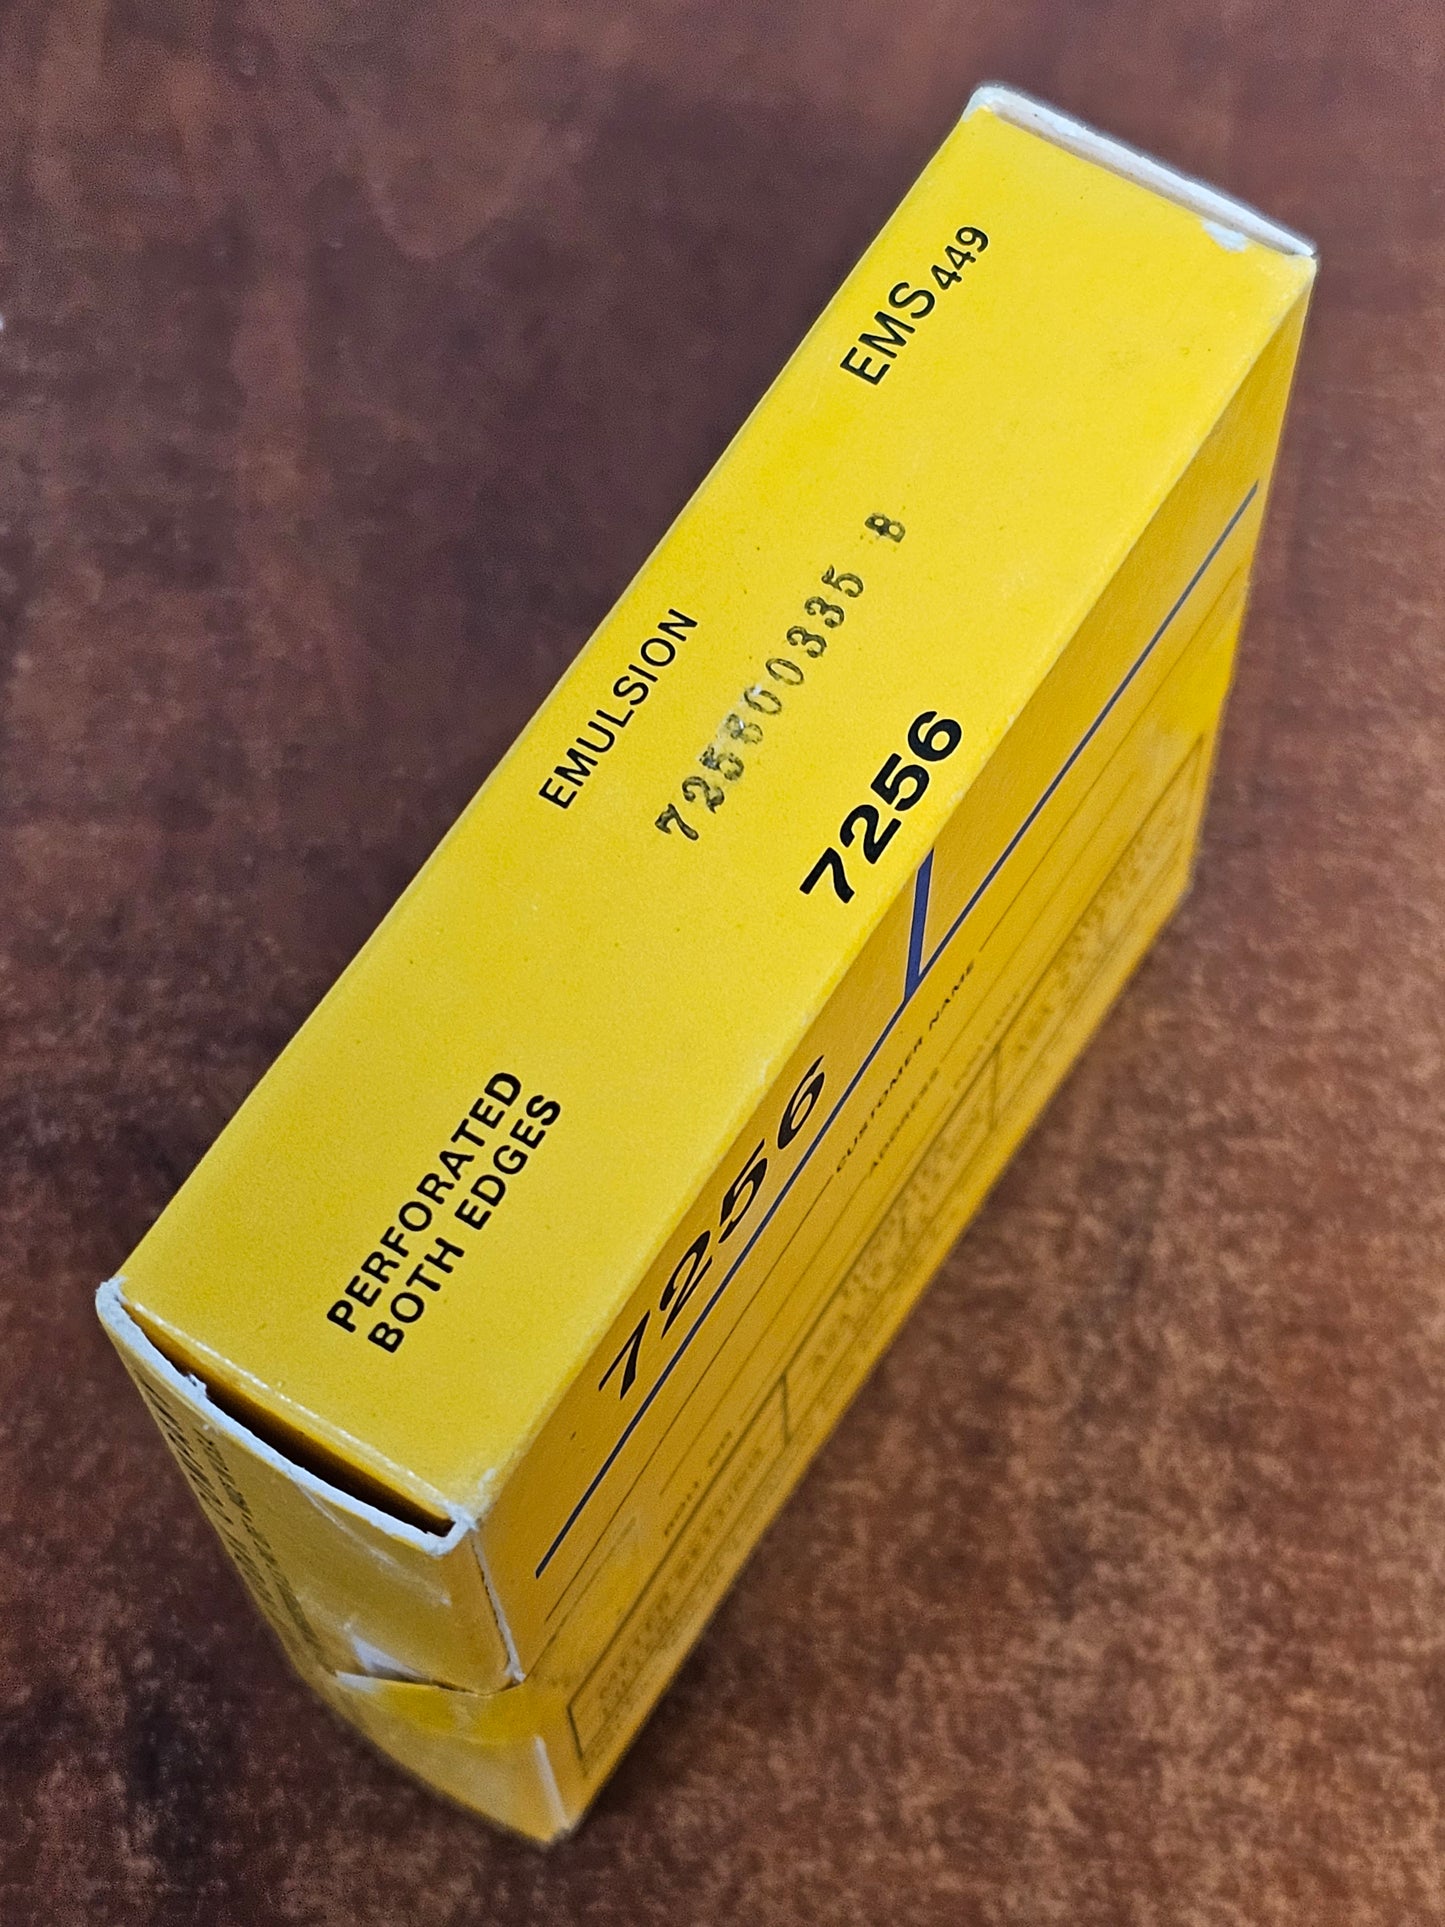 KODAK 7256 Ektachrome MS 16mm 100' Color Reversal Film ( Expired Stock )